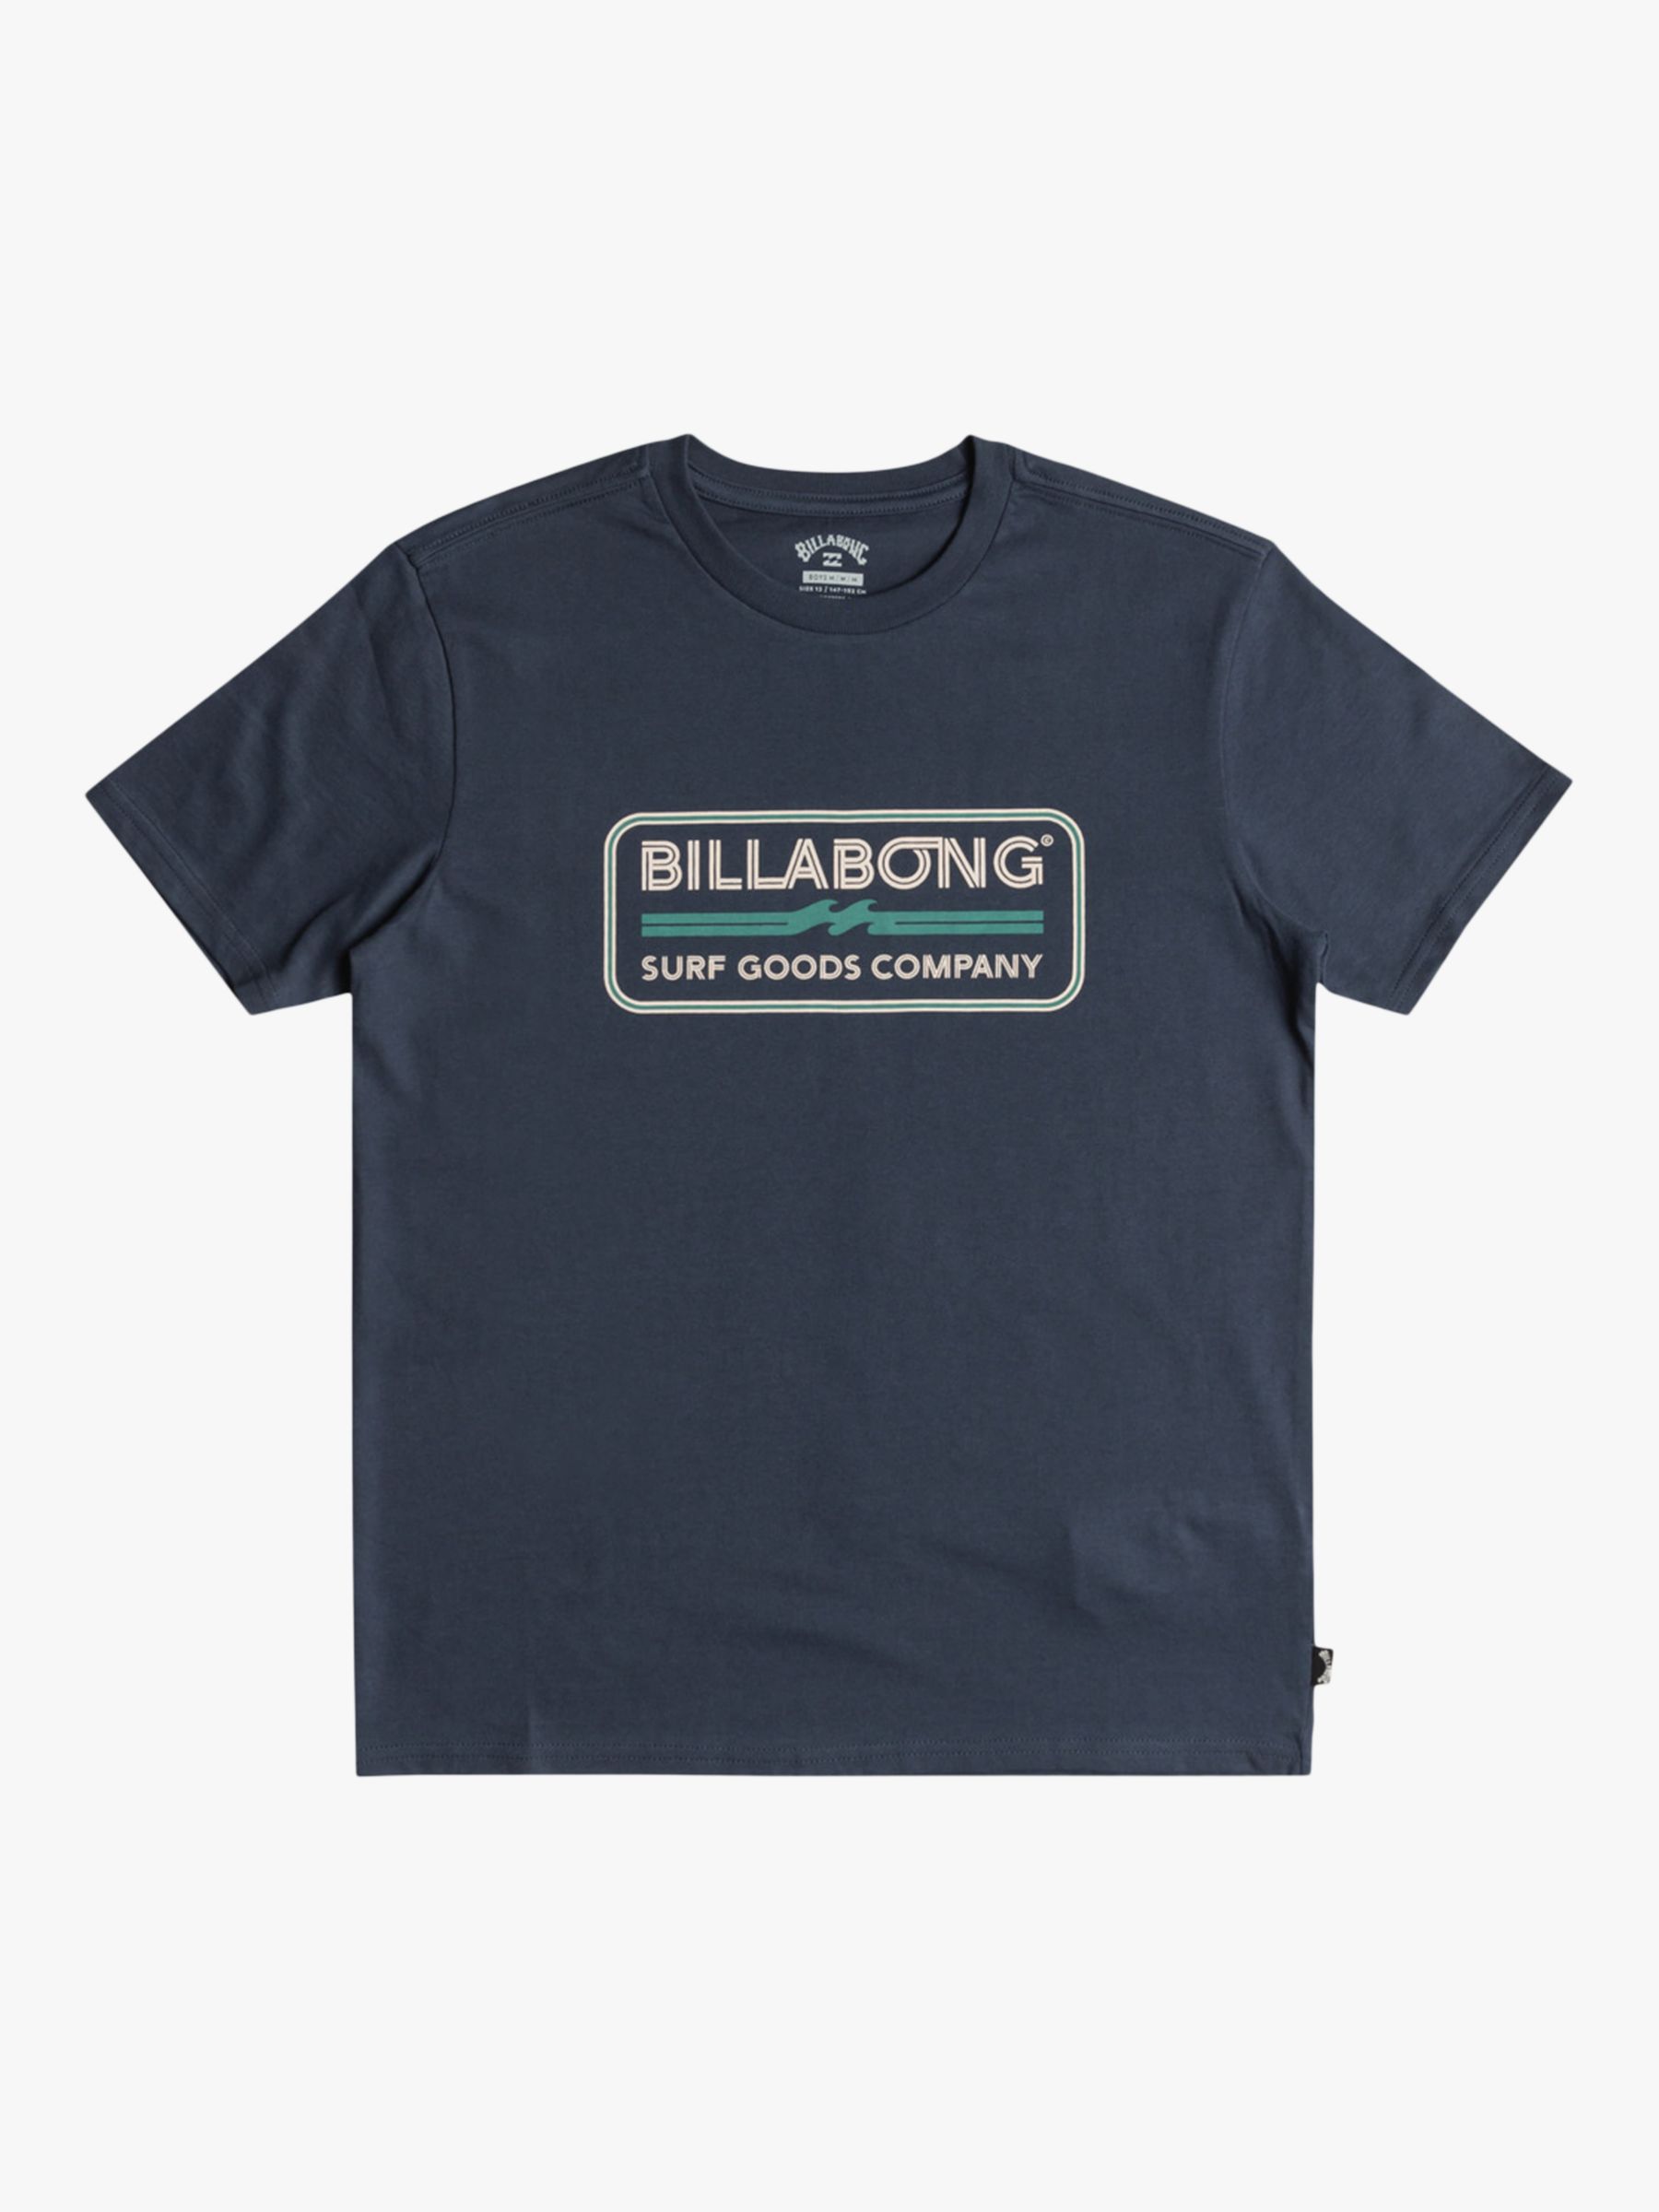 Billabong Kids' Logo T-Shirt, Denim Blue, 12 years